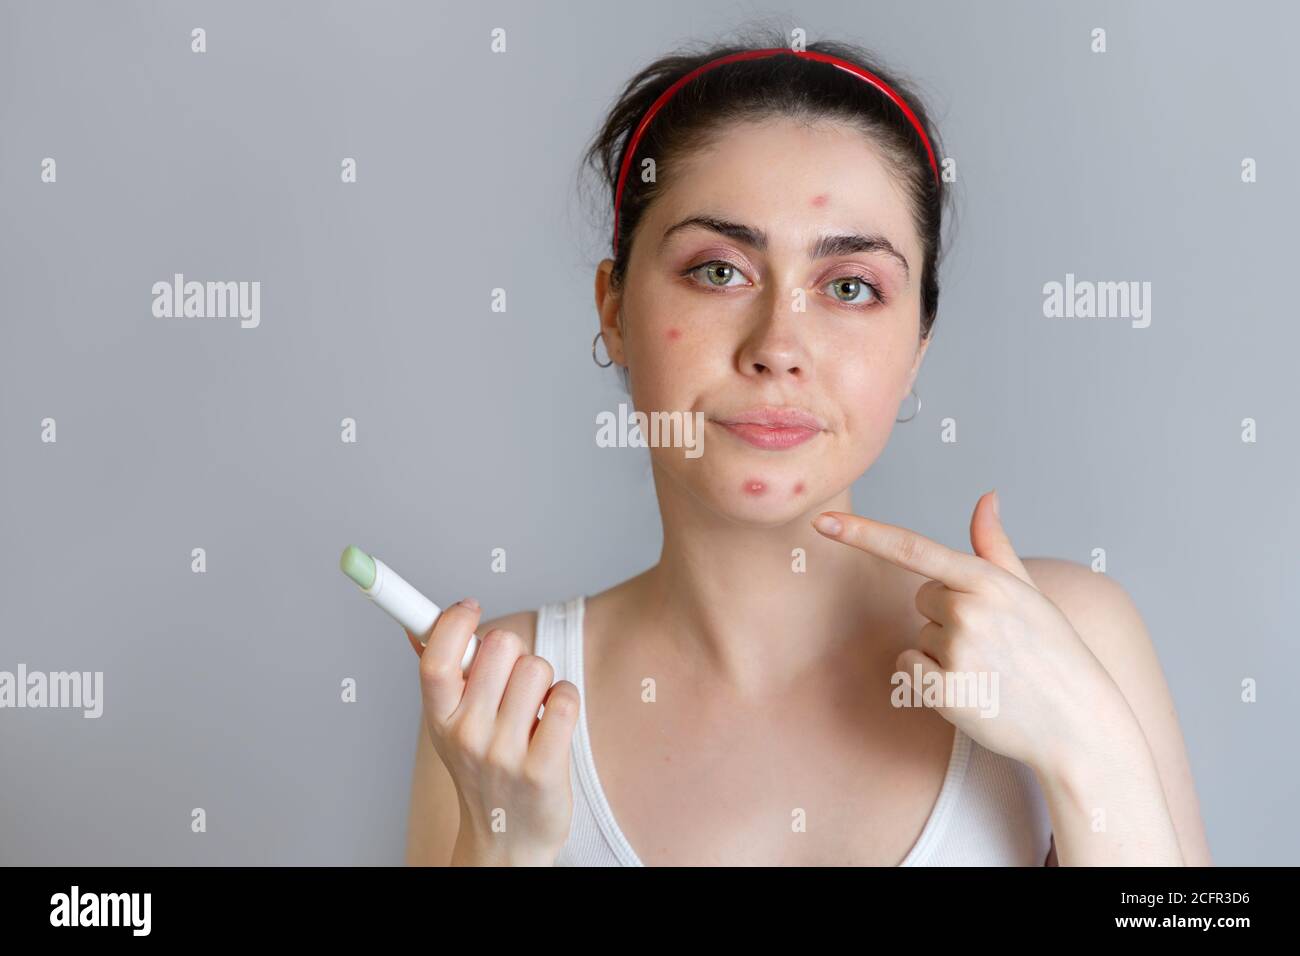 Una joven disgustado señala el acné en su barbilla. El concepto de acné, crecimiento y cosmetología. Espacio de copia. Foto de stock